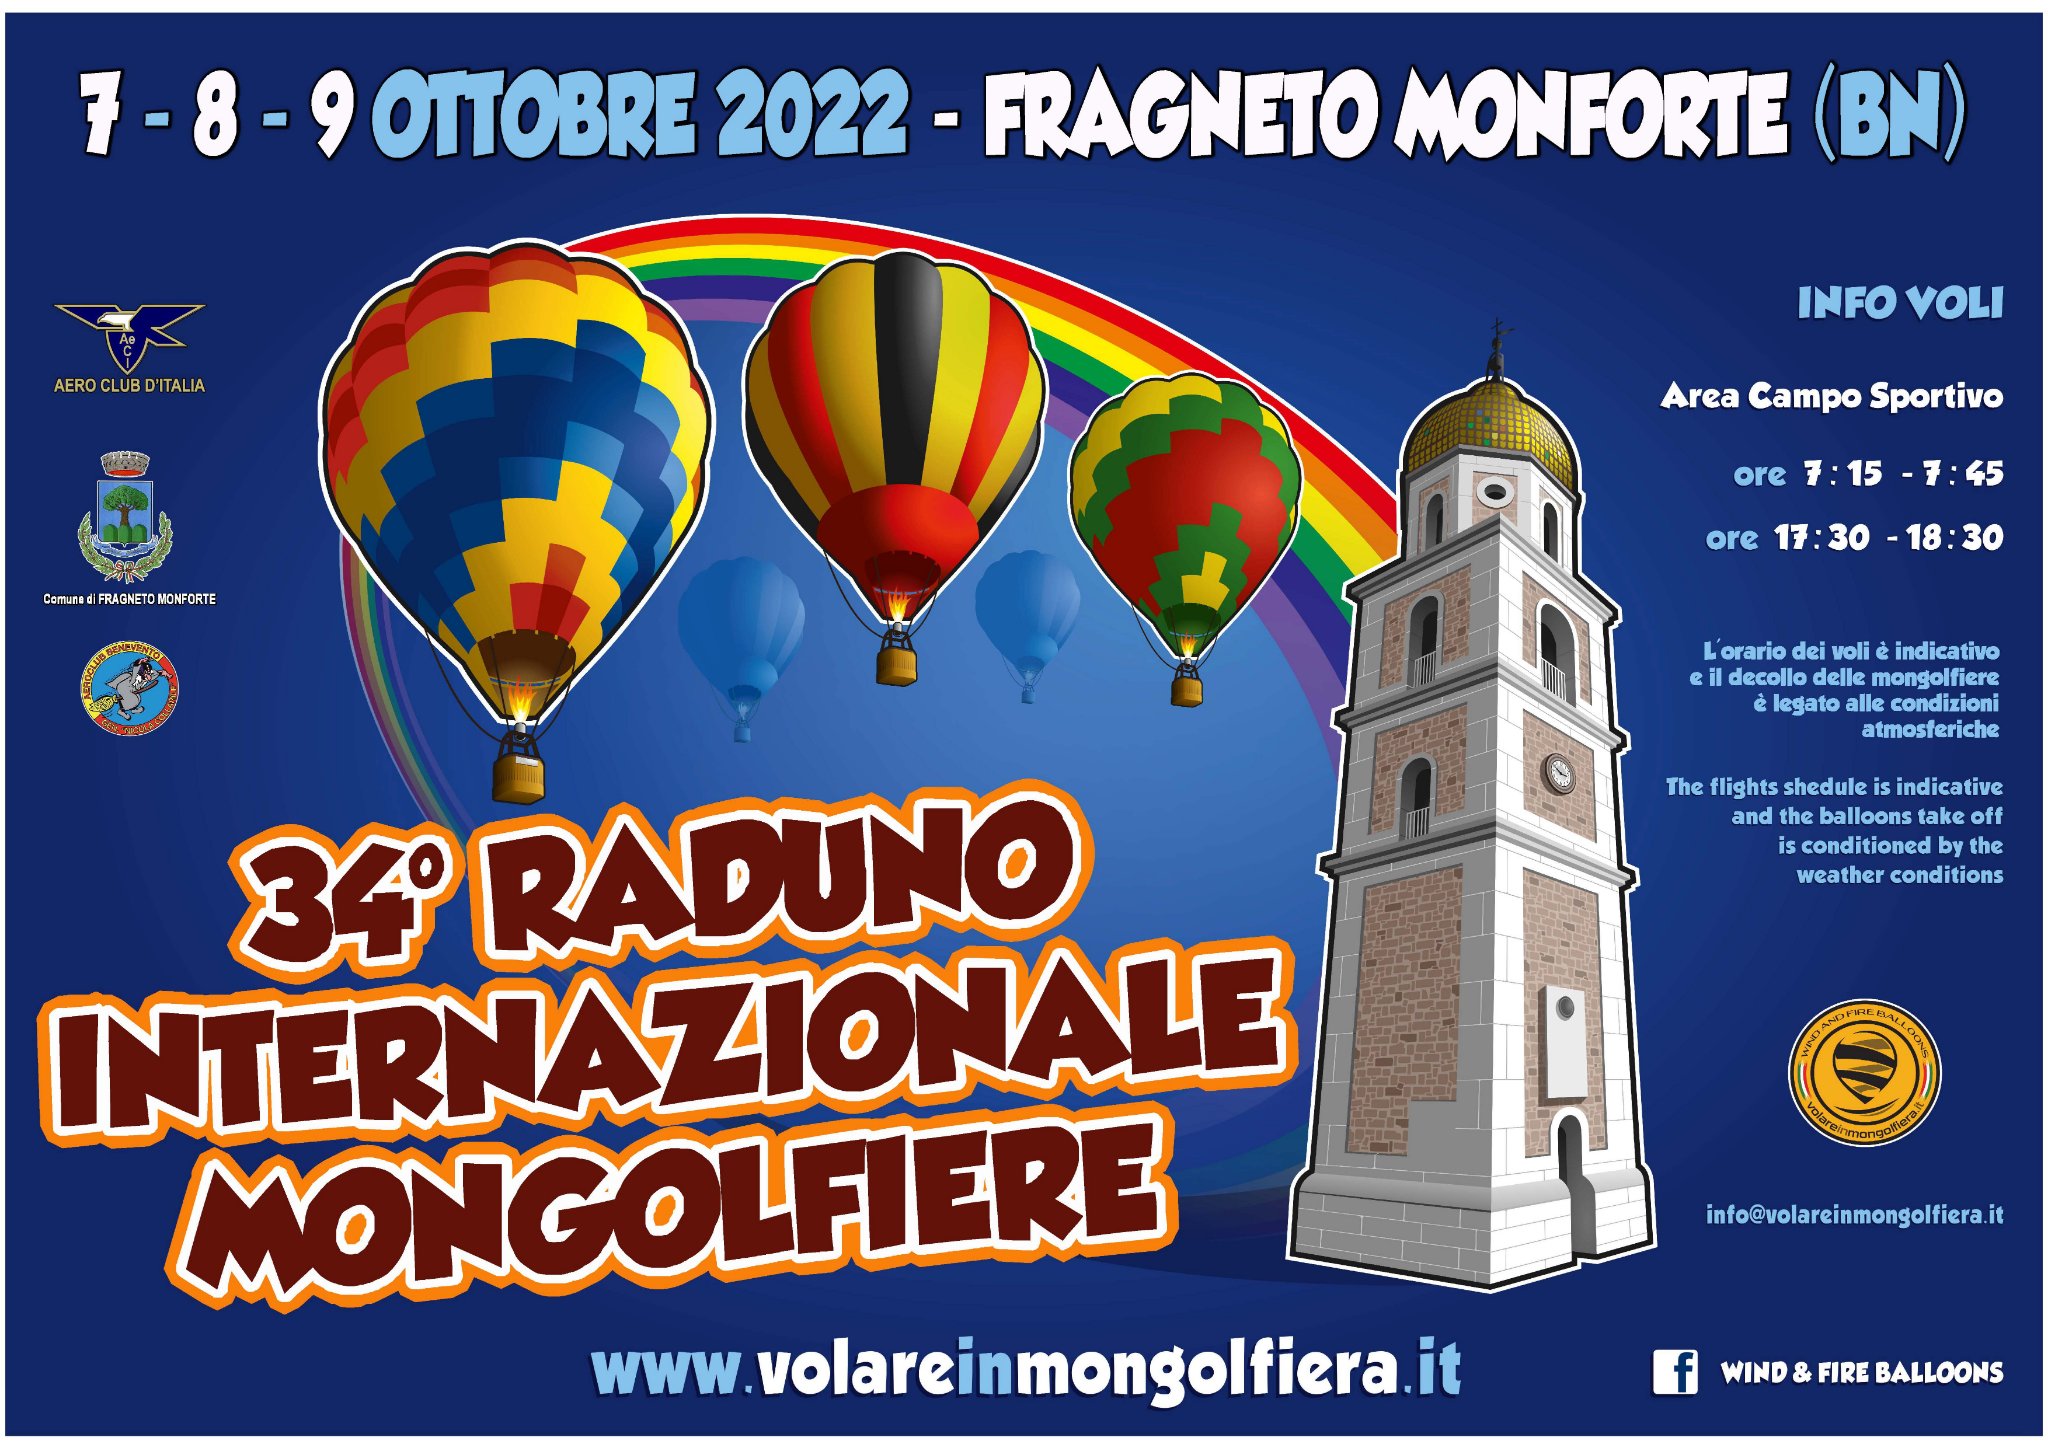 A Fragneto Monforte ritornano le mongolfiere con una novita’…